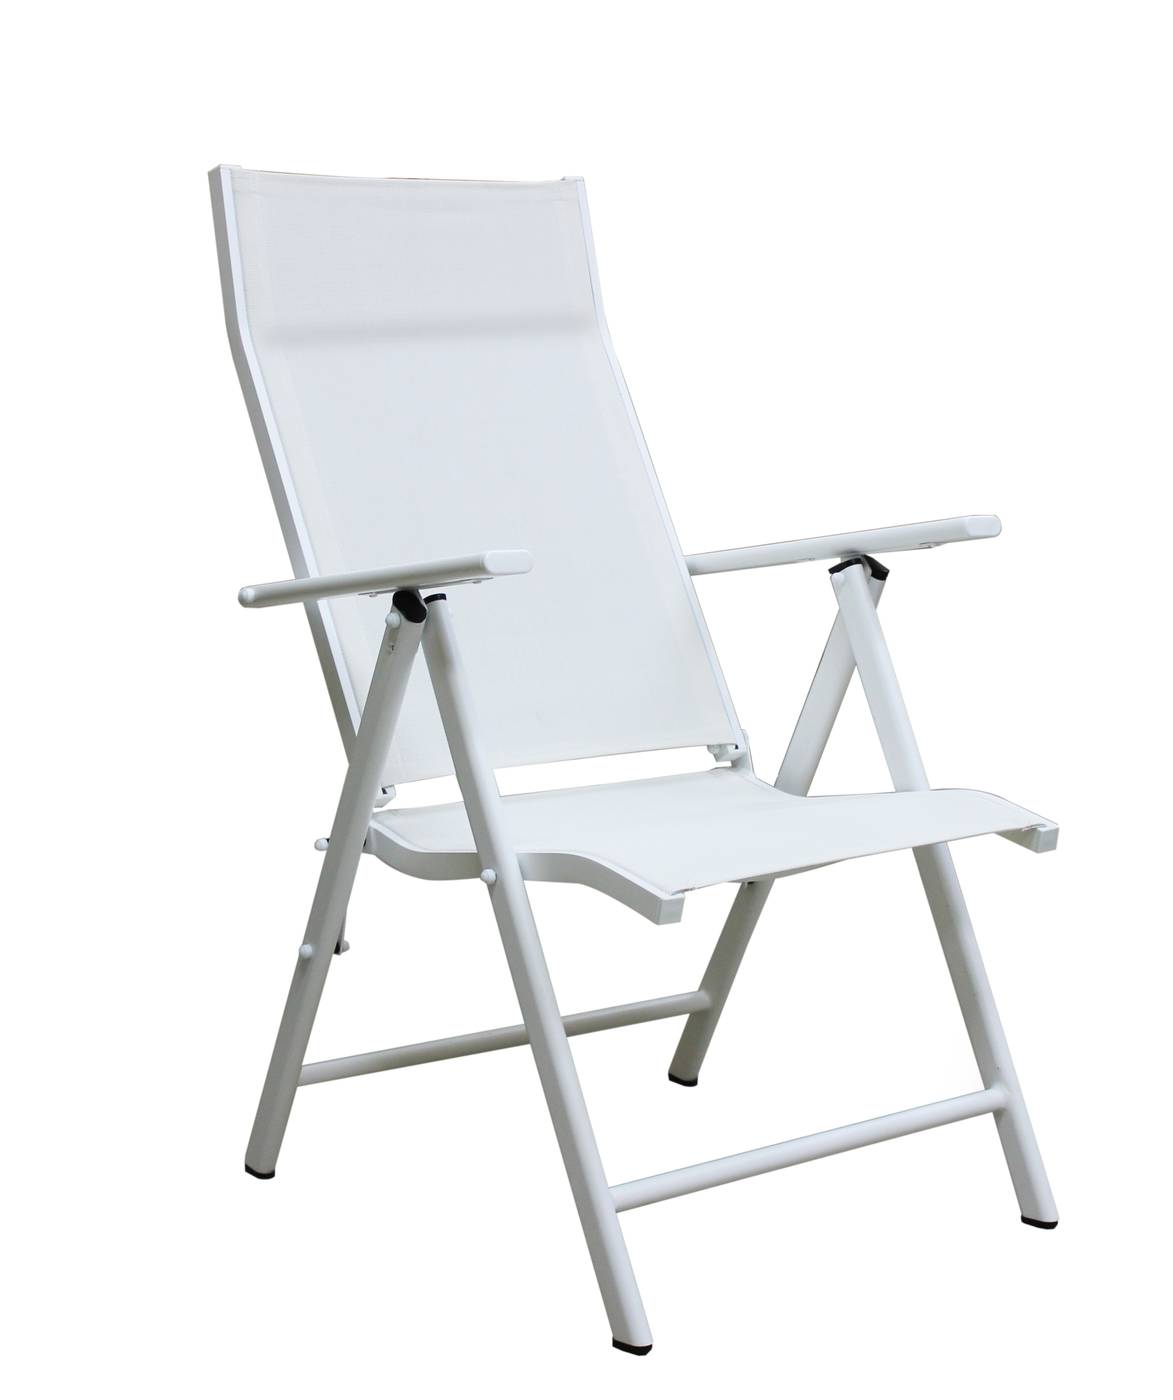 Set Córcega-160-4 Saporo - Conjunto de aluminio para jardín: Mesa rectangular con tablero HPL de 160 cm + 4 tumbonas con asiento y respaldo textilen. Colores: blanco y antracita.